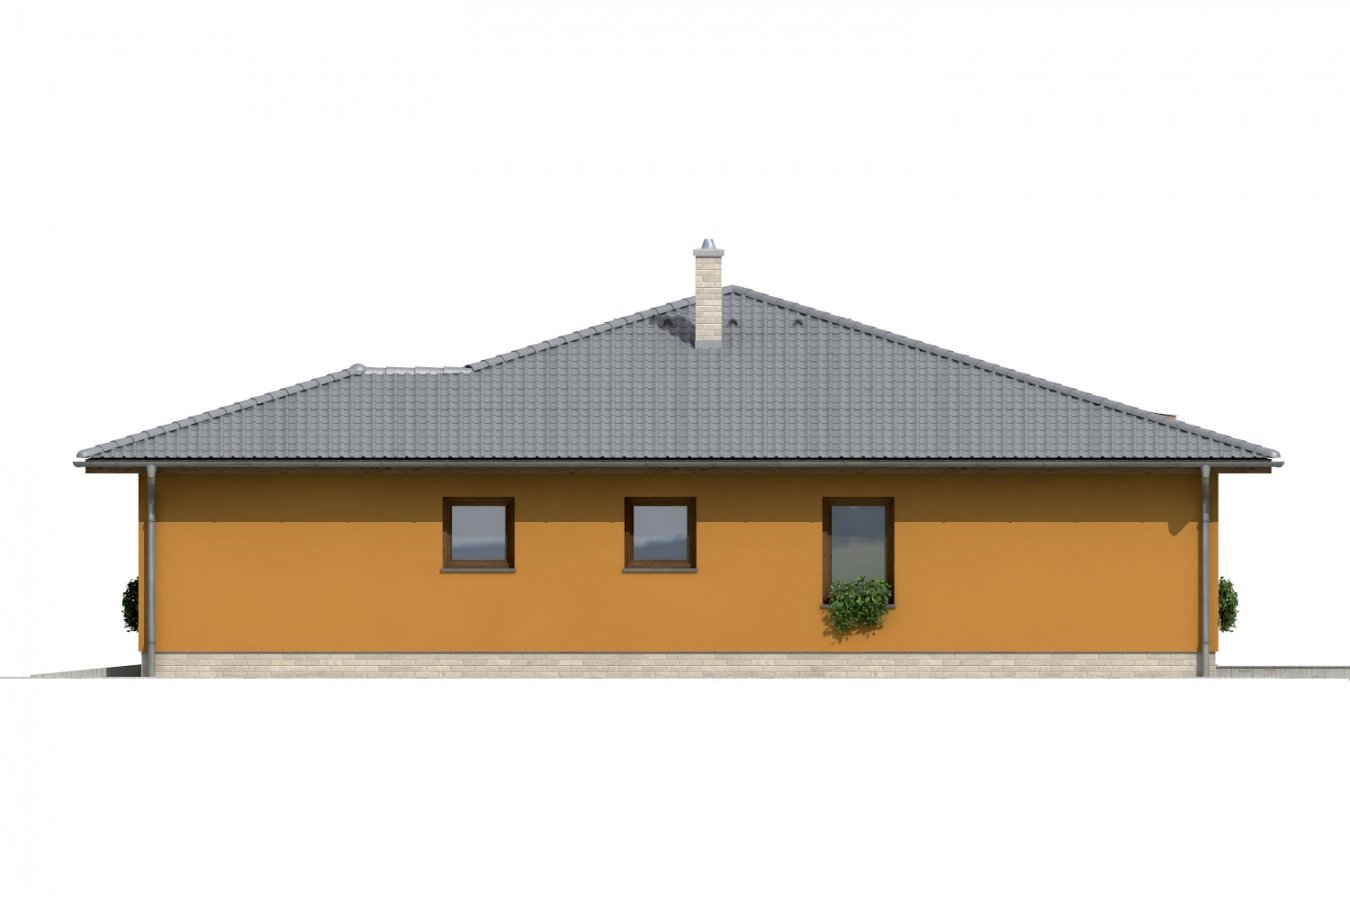 Pohľad 4. - Dům se stanovou střechou a prosvětlenou obývacím pokojem se střešními okny.